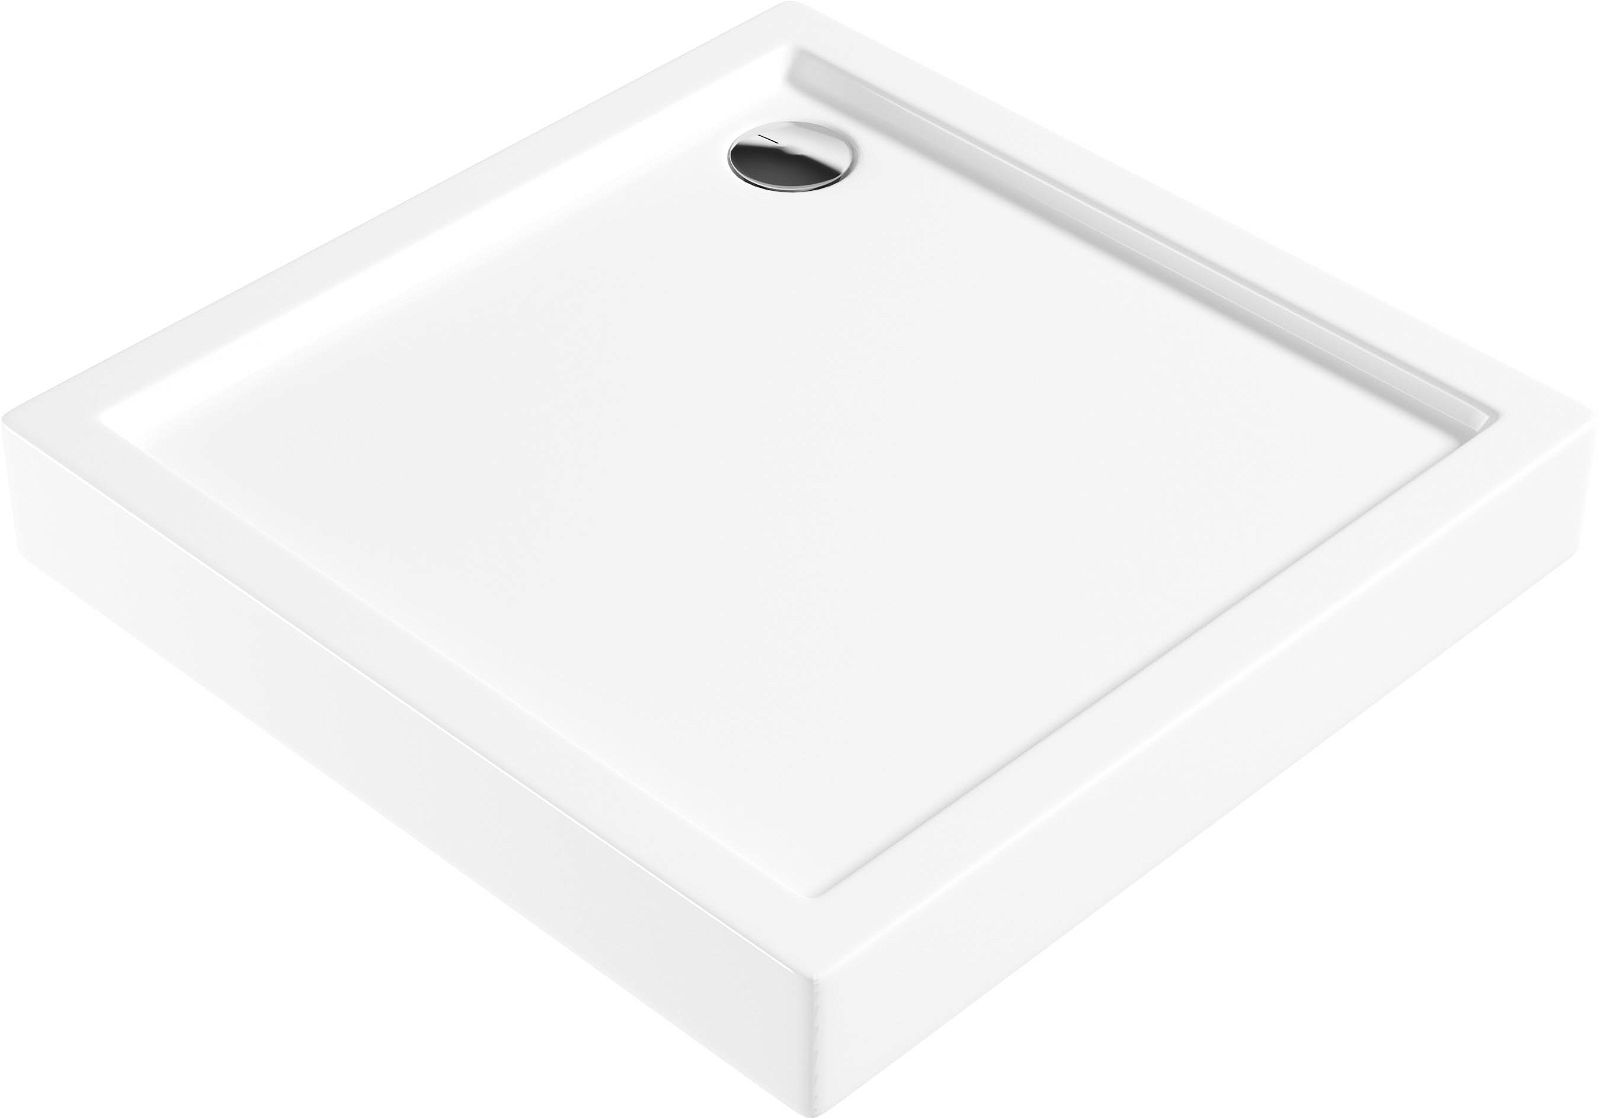 Acrylic shower tray, square, 80 cm - KTJ_042B - Główne zdjęcie produktowe